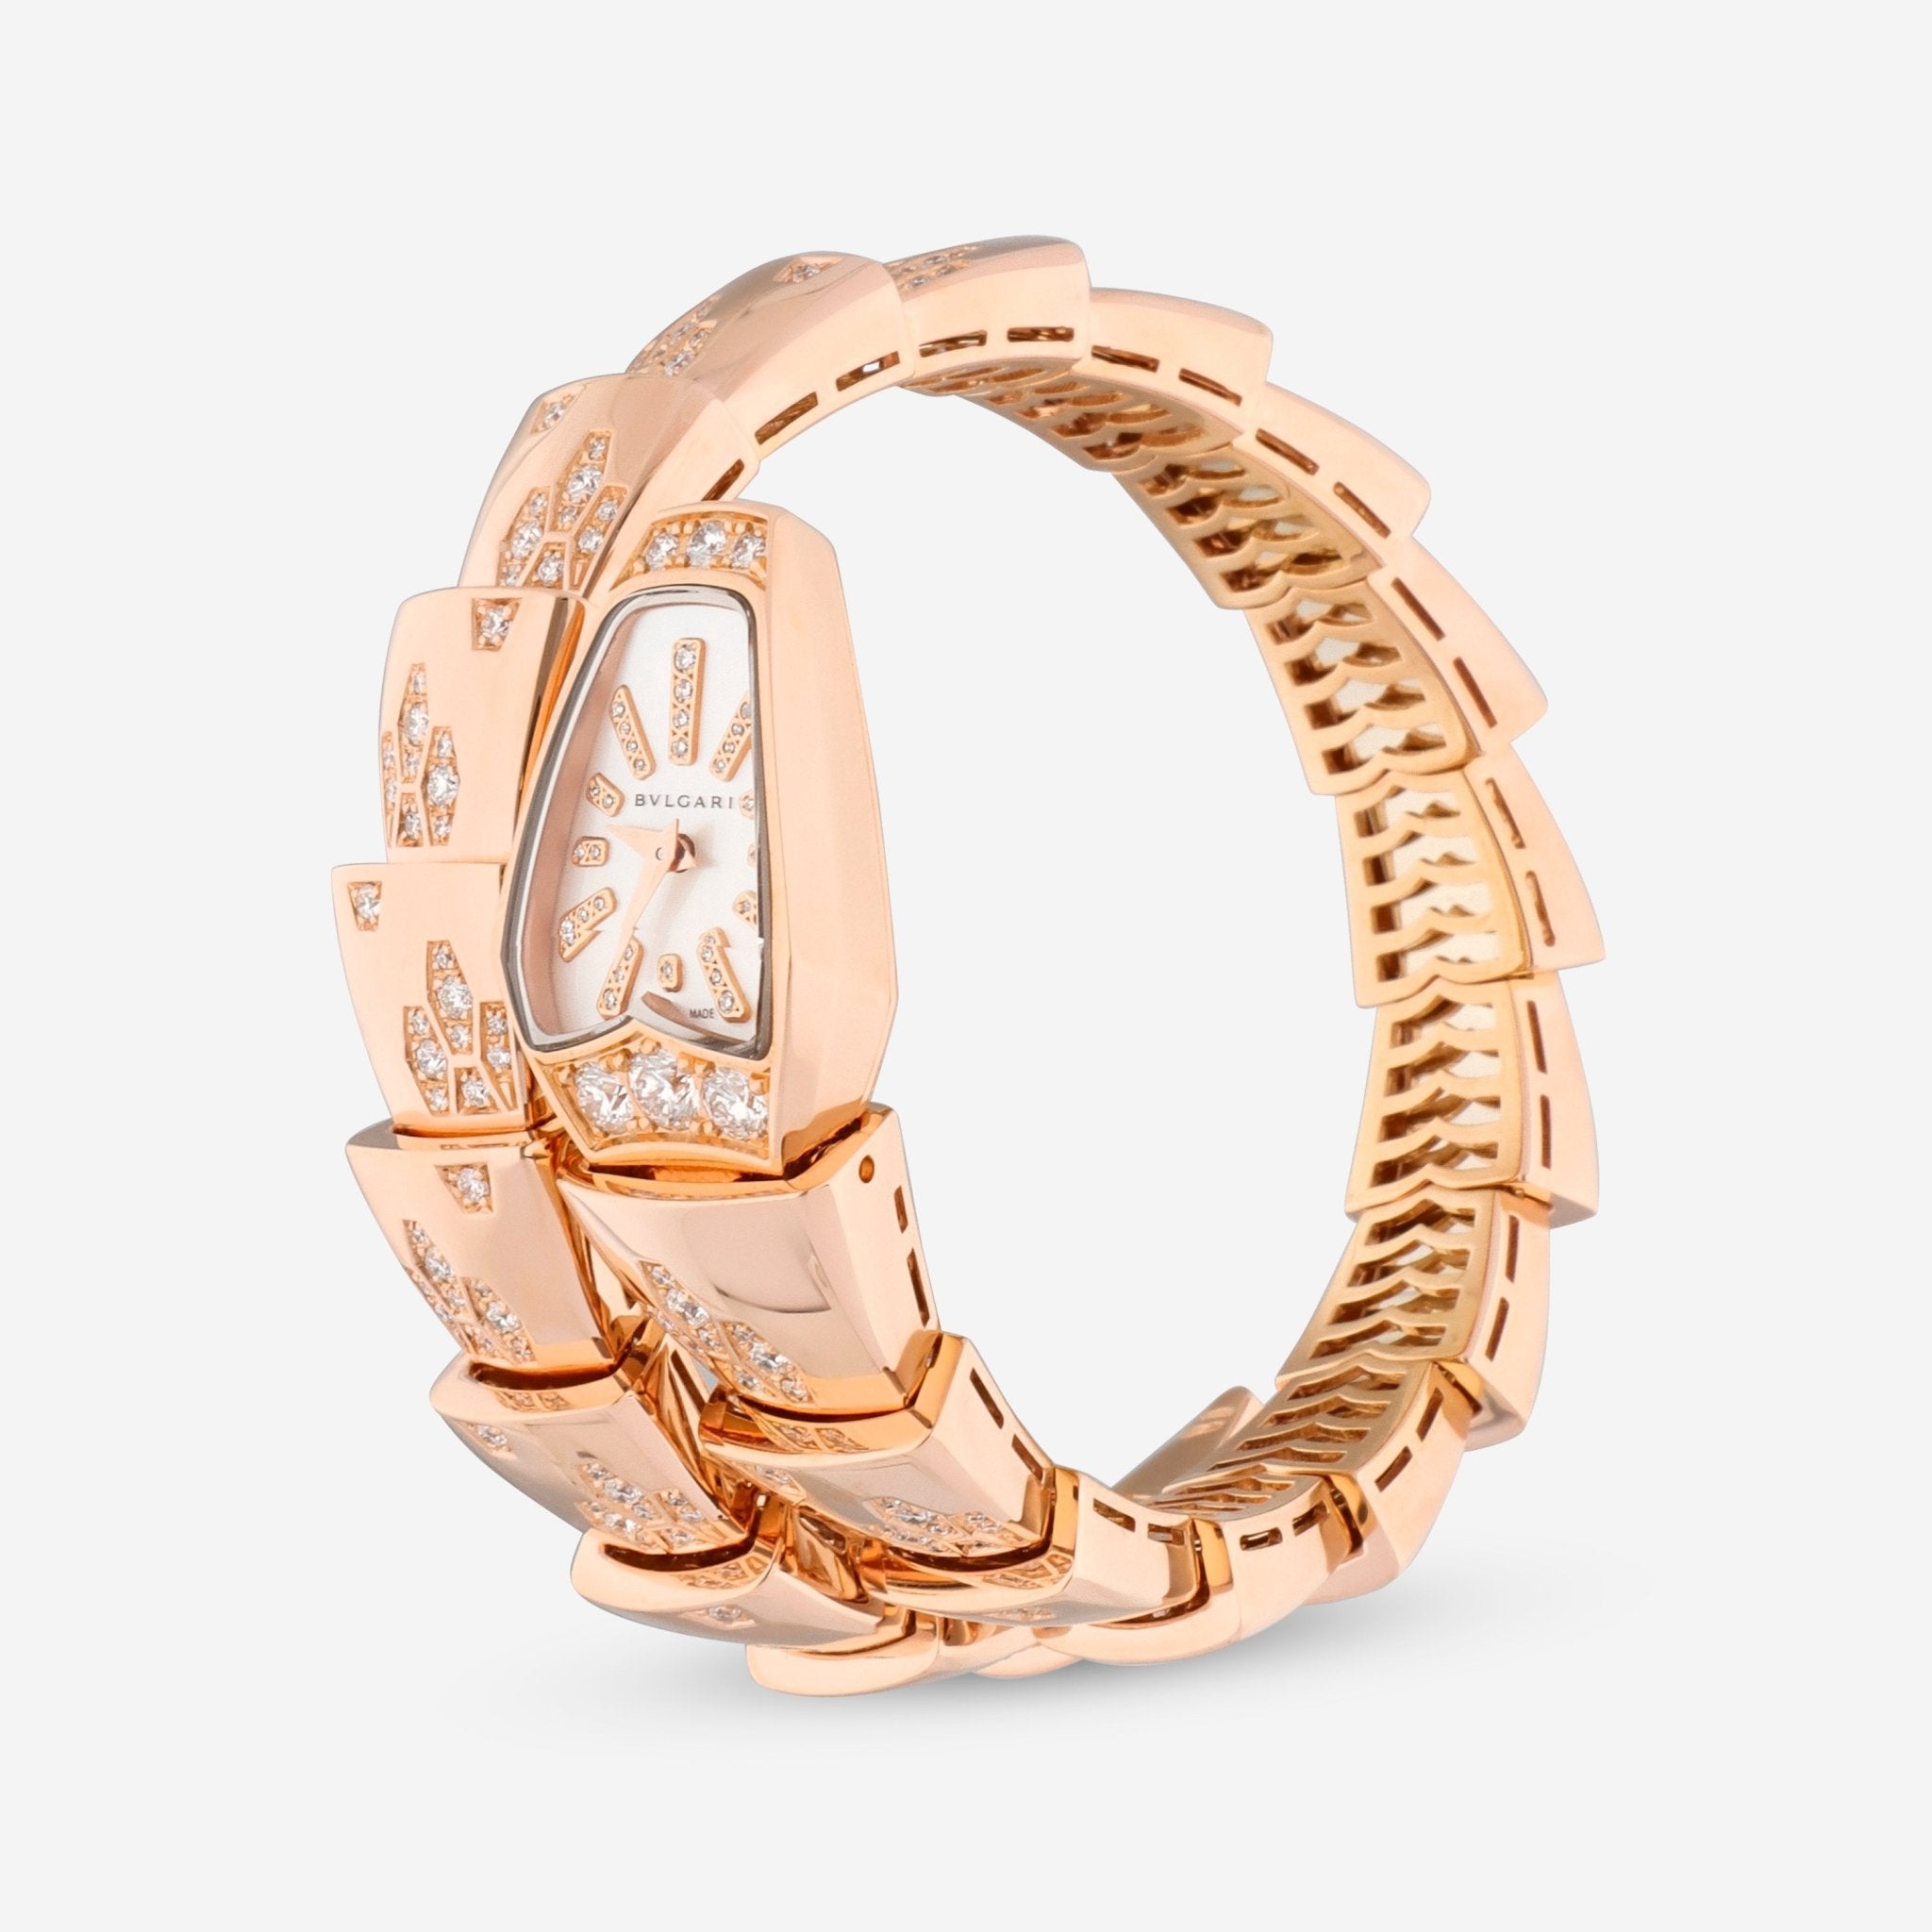 Bulgari Serpenti 18K Rose Gold Diamond Quartz Ladies Watch 101995 - THE SOLIST - Bulgari